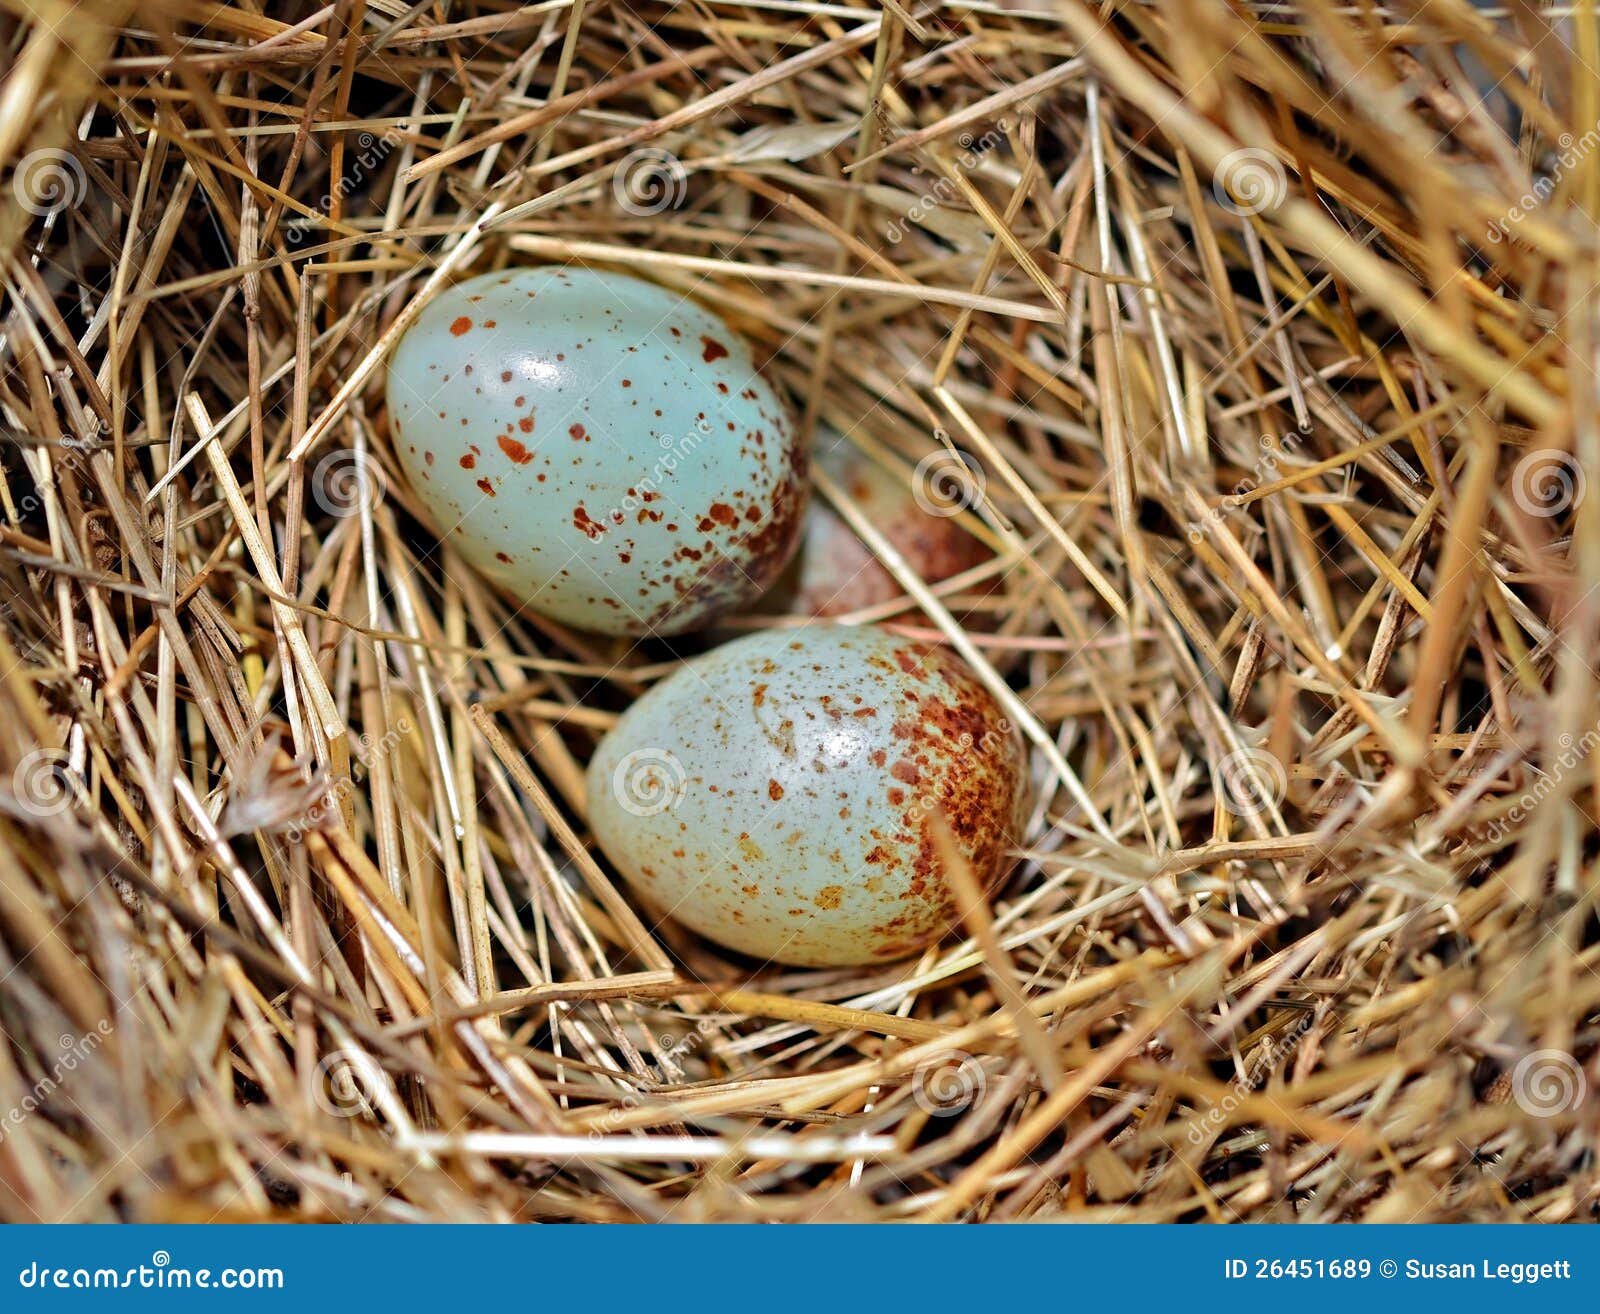 De Kleurrijke Uiterst Kleine Eieren Van Stock Afbeelding - Image of dier, kleur: 26451689